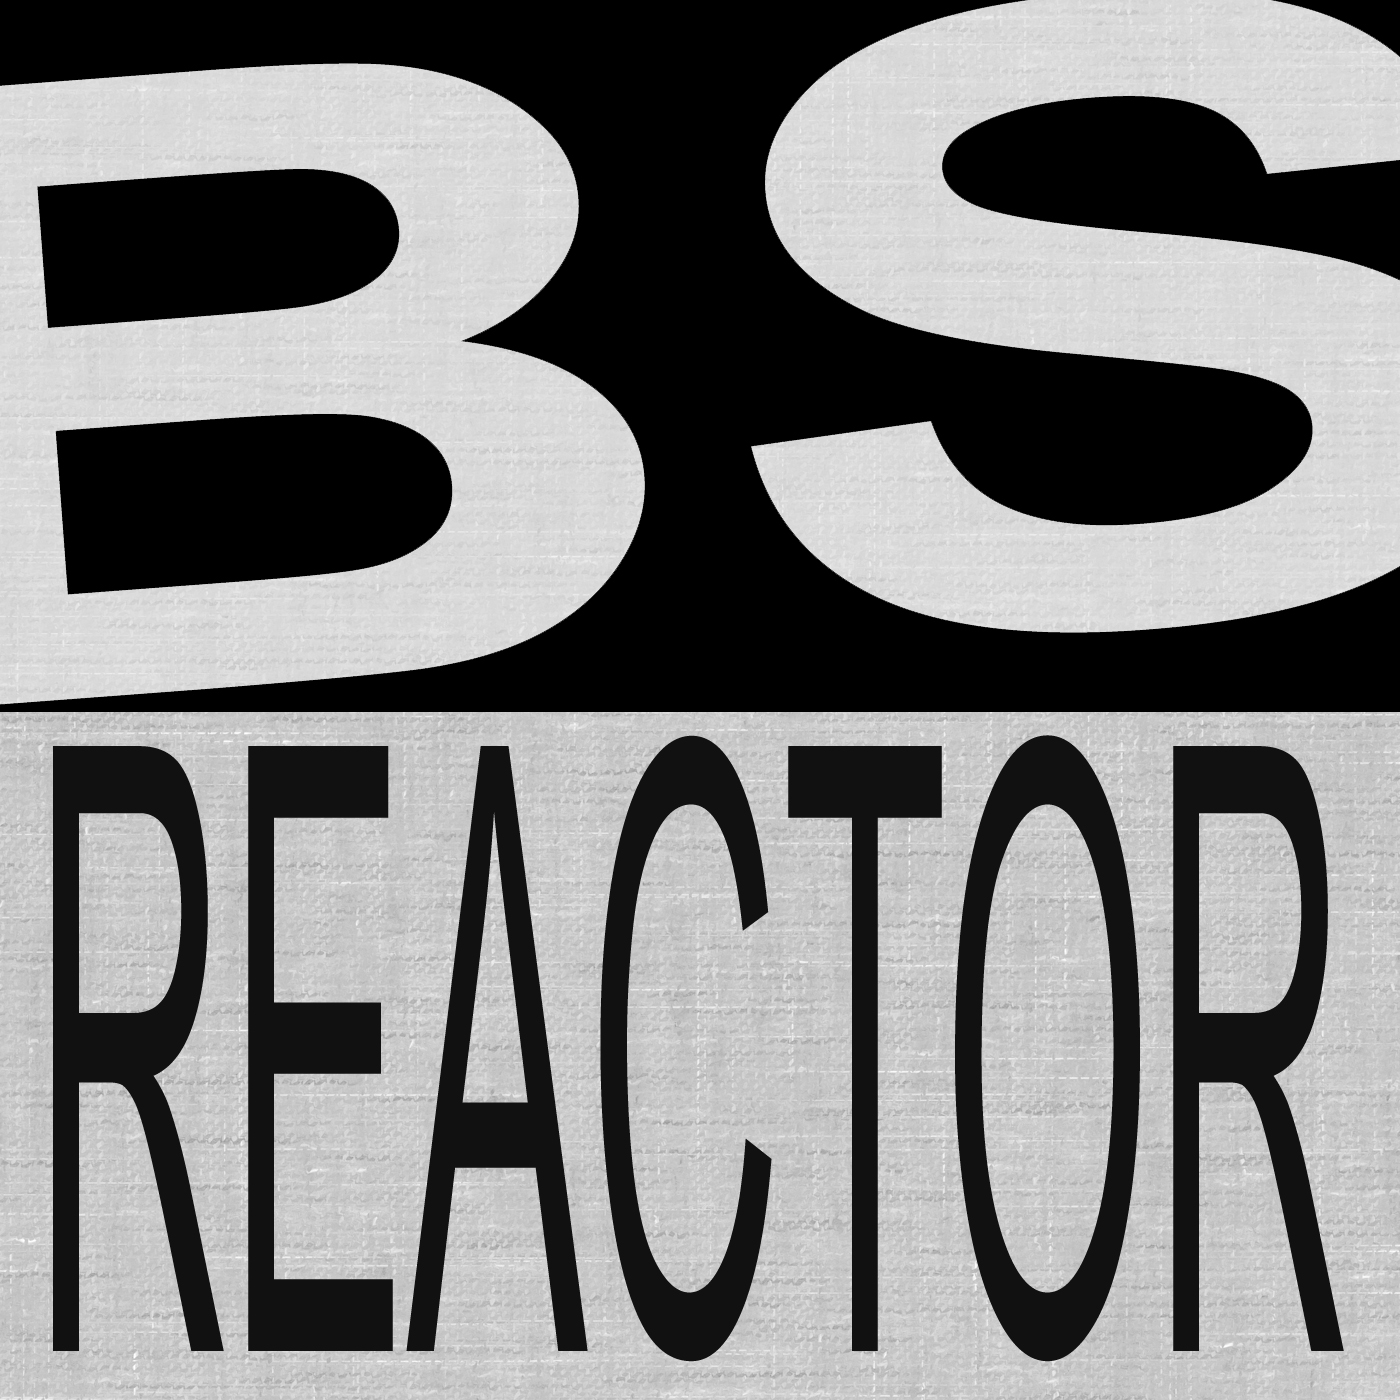 BS Reactor